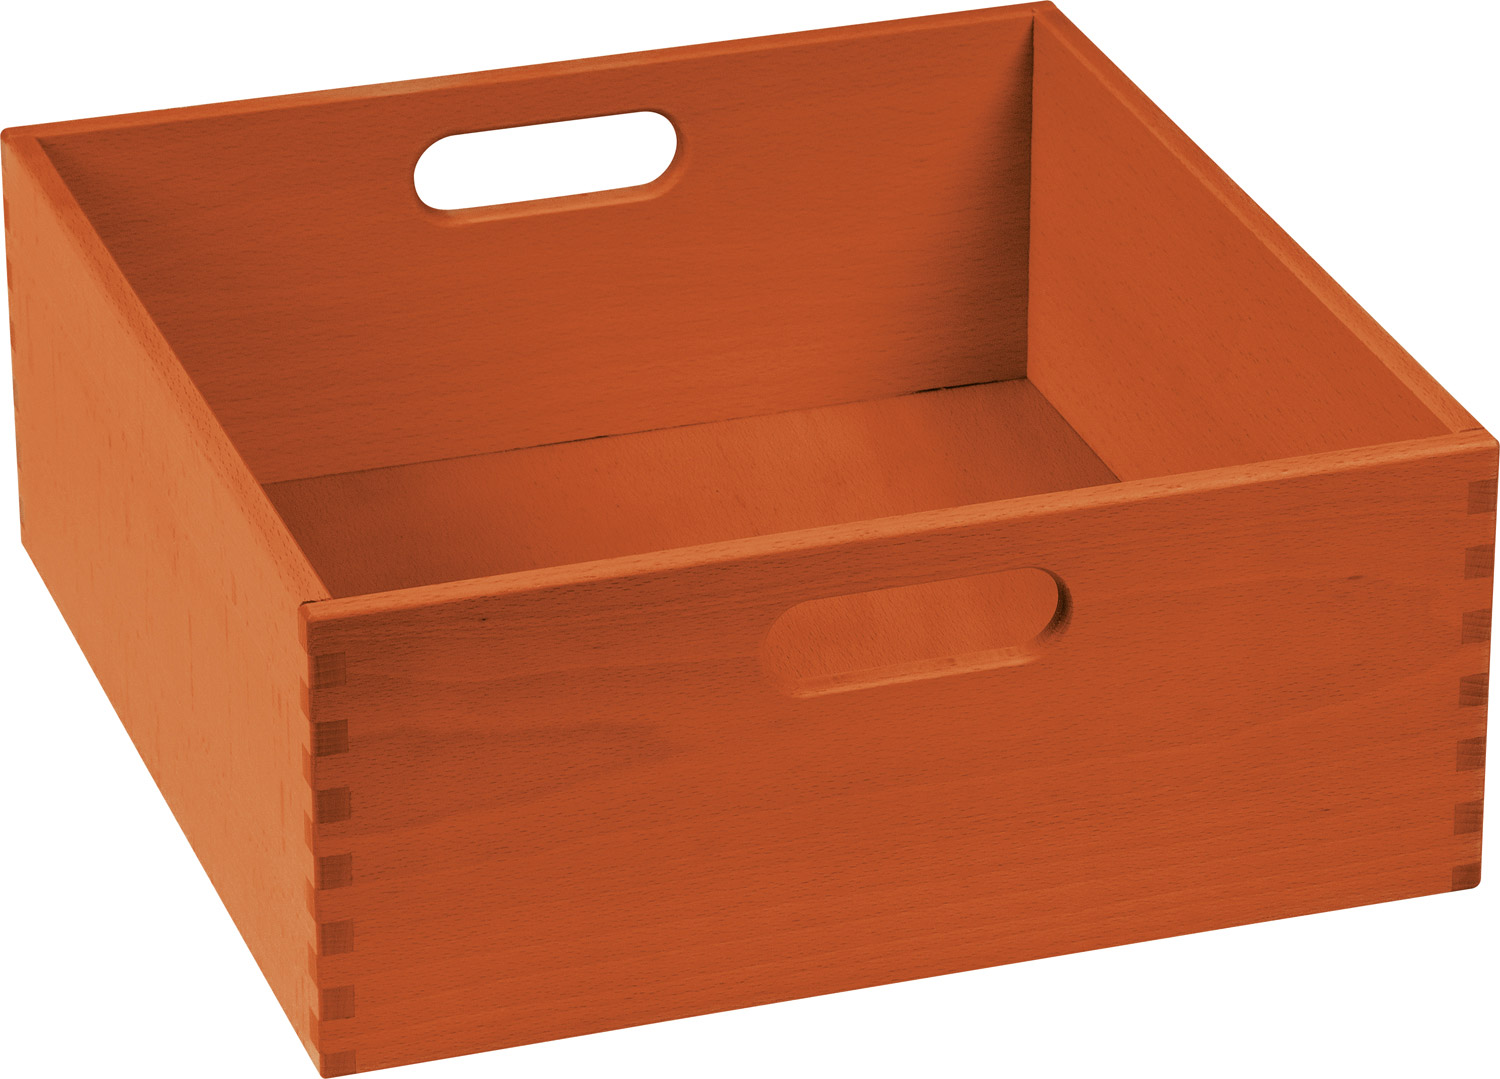 Materialkasten extra breit, 14 cm hoch orange